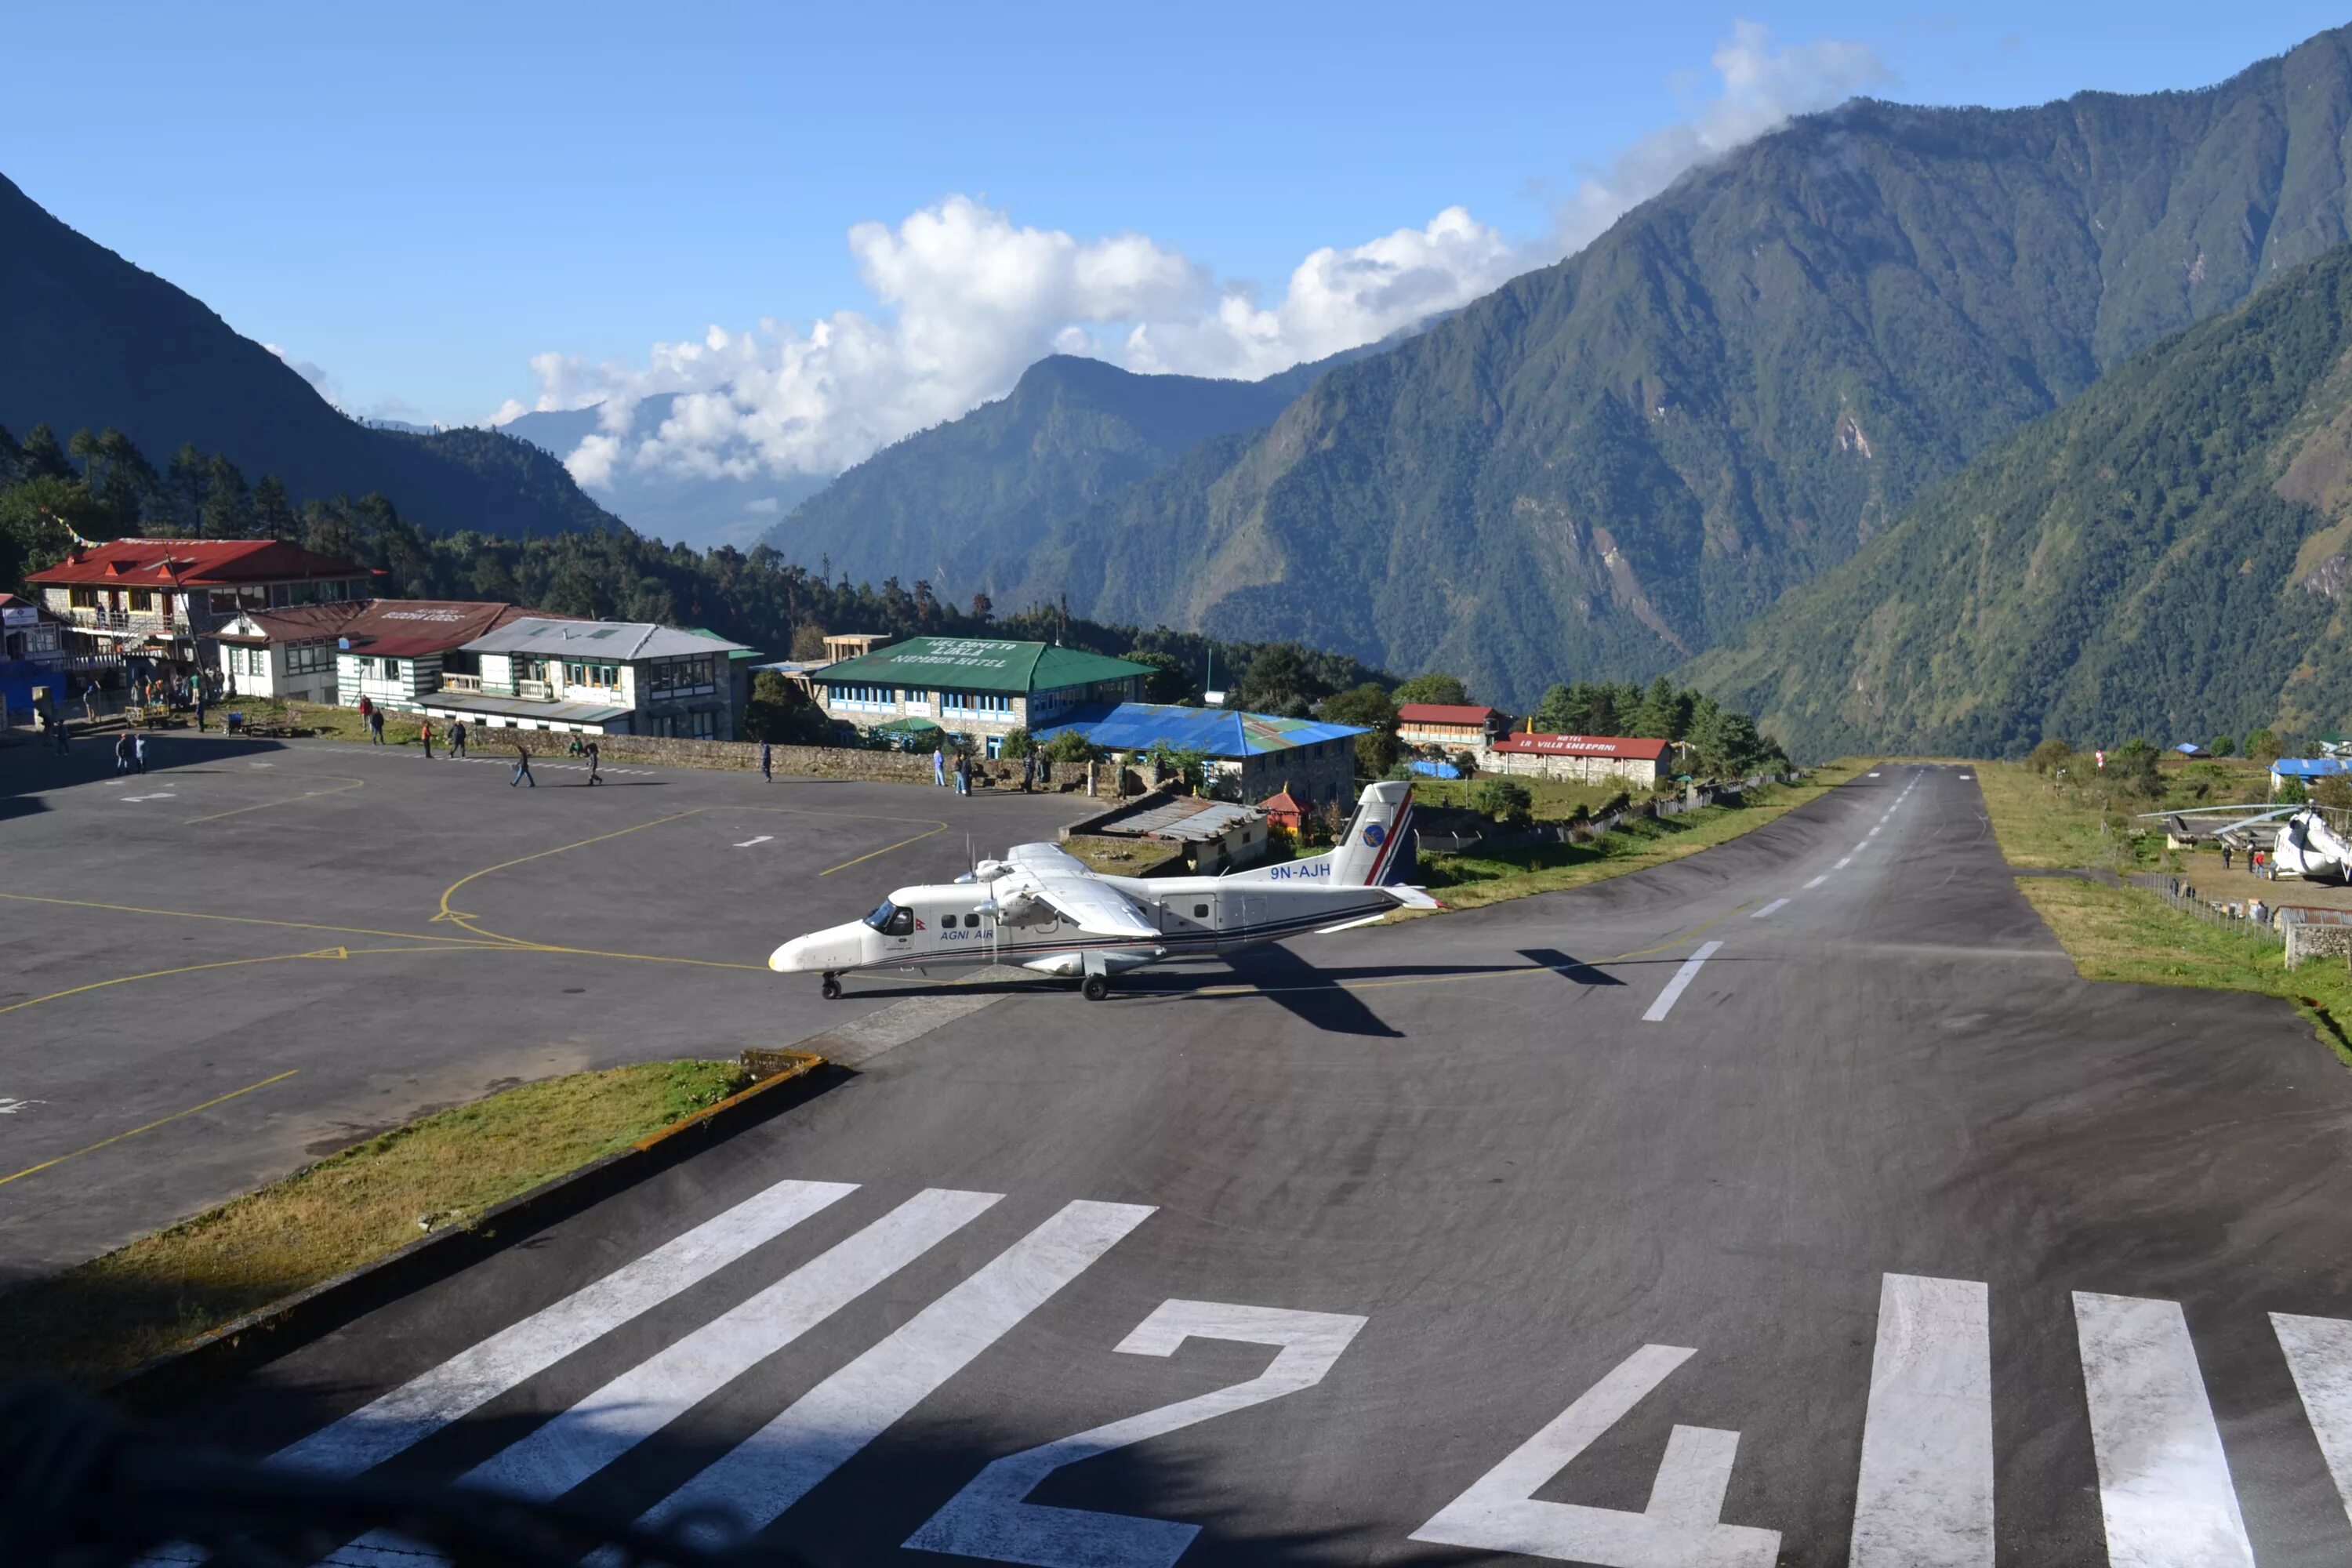 Аэропорт лукла. Аэропорт Лукла Непал. Аэропорт Тенцинг-Хиллари, Лукла, Непал. Аэропорт имени Тэнцинга и Хиллари, Непал. Лукла Тенцинг-аэропорт Хиллари.